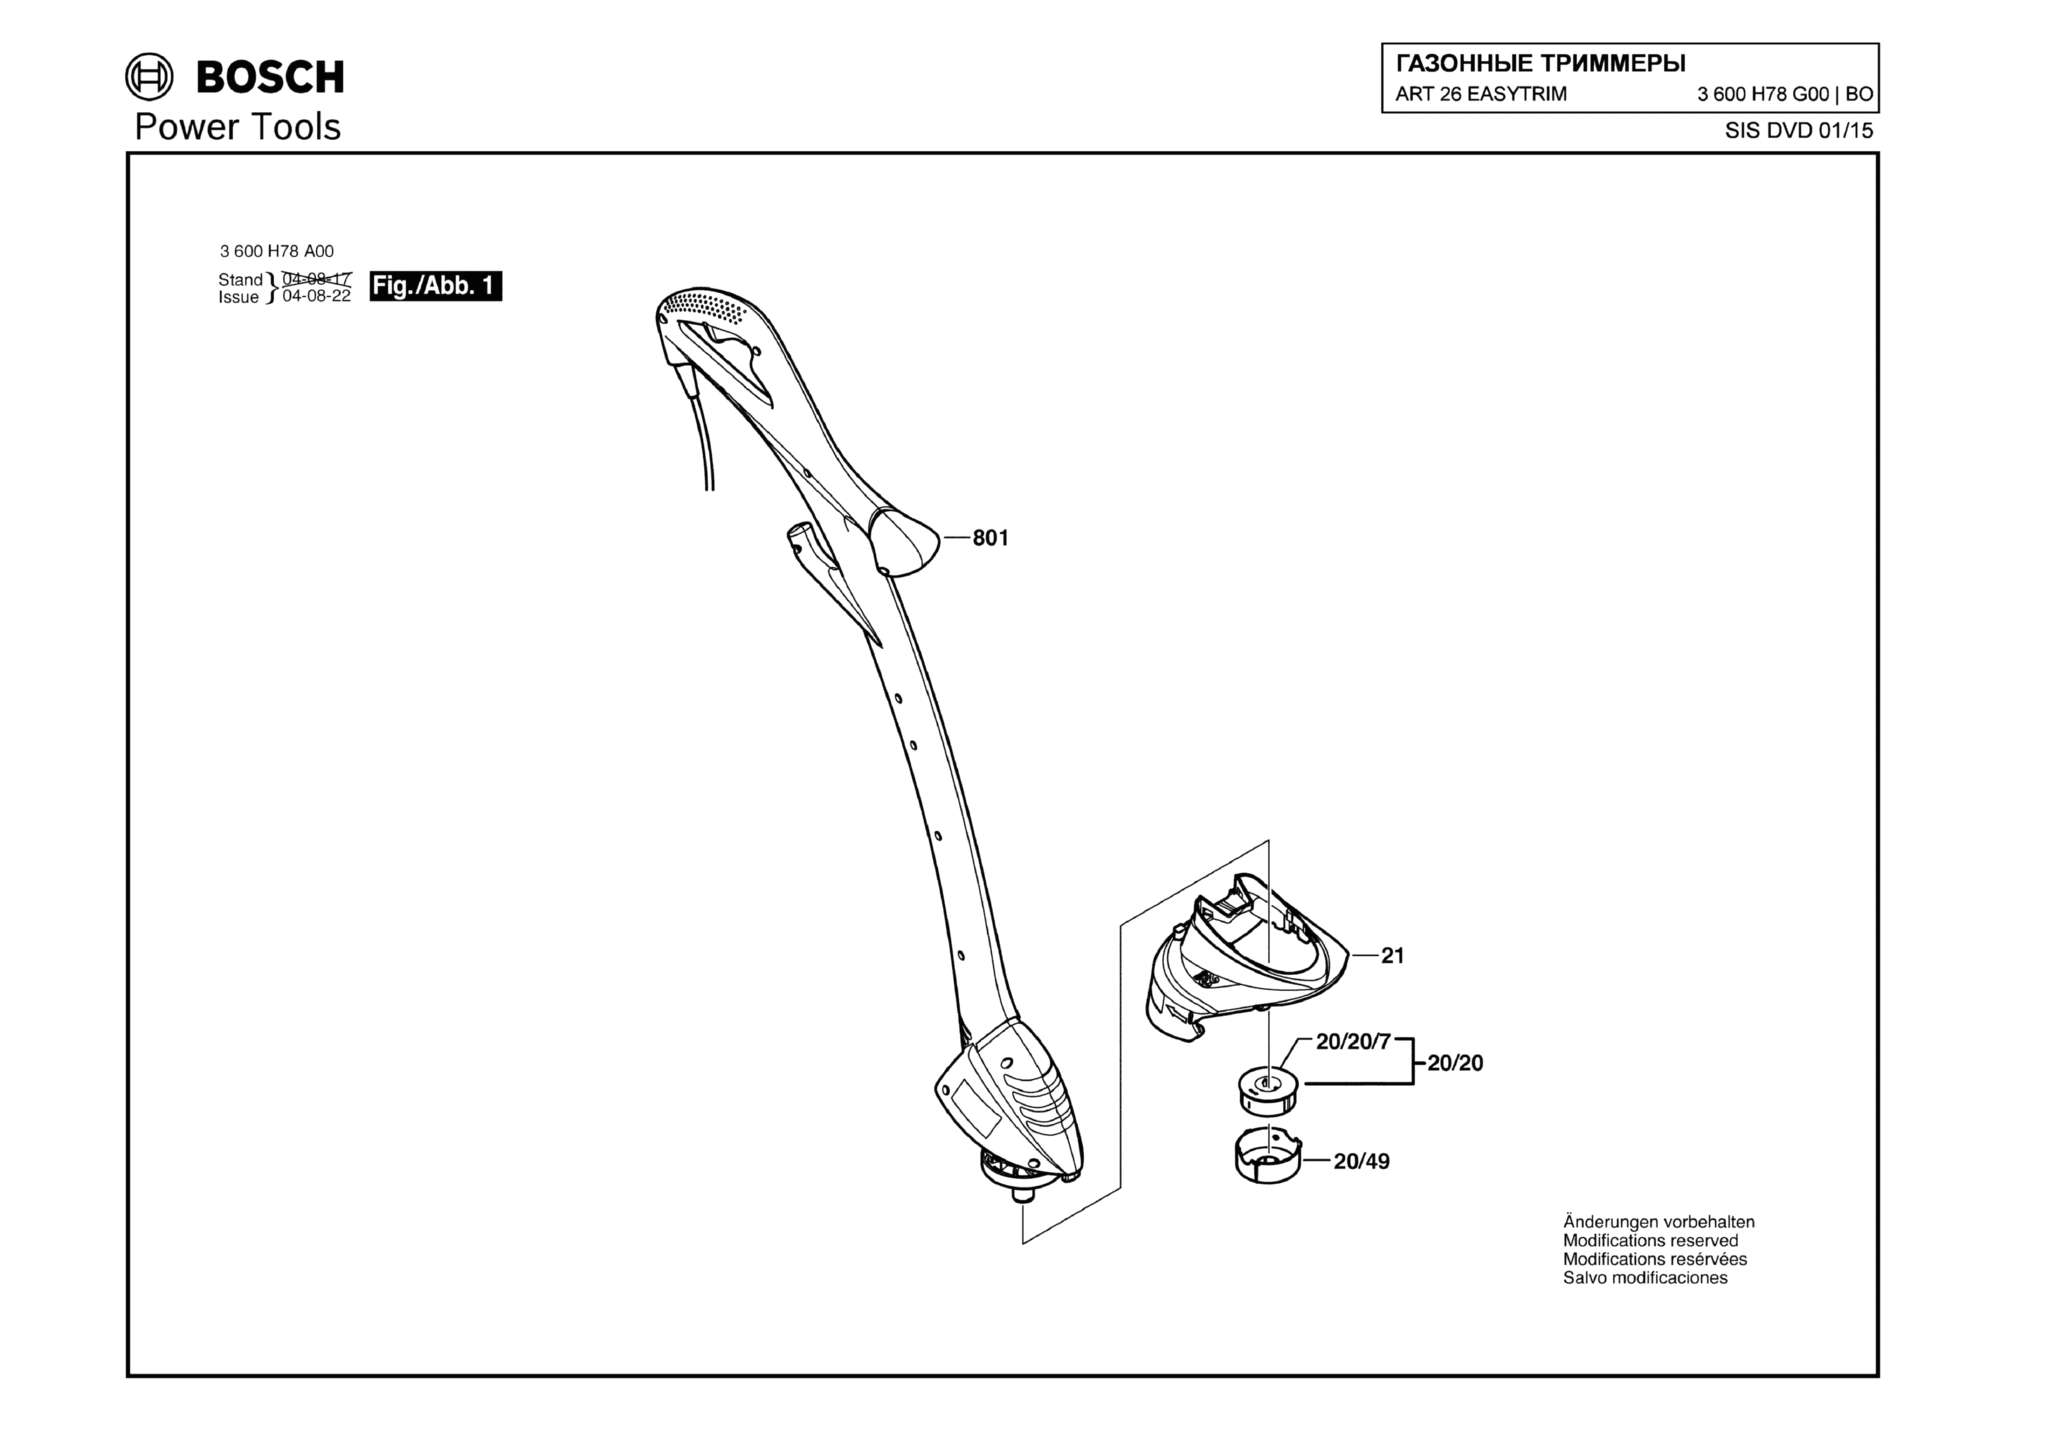 Запчасти, схема и деталировка Bosch ART 26 EASYTRIM (ТИП 3600H78G00)